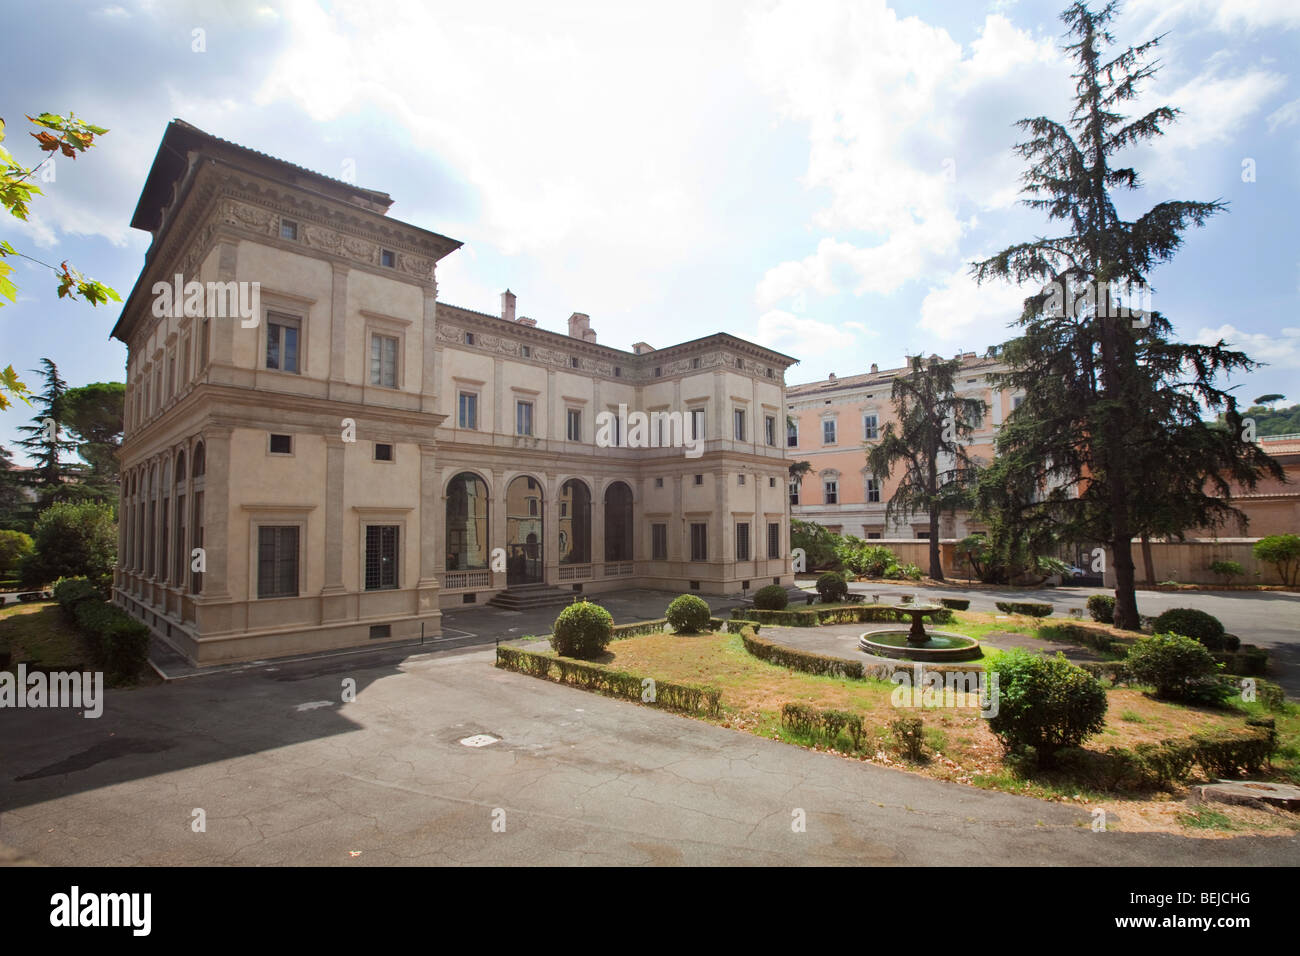 Villa Farnesina, Accademia Nazionale dei Lincei, Via della Lungara street, Rome, Italy Stock Photo